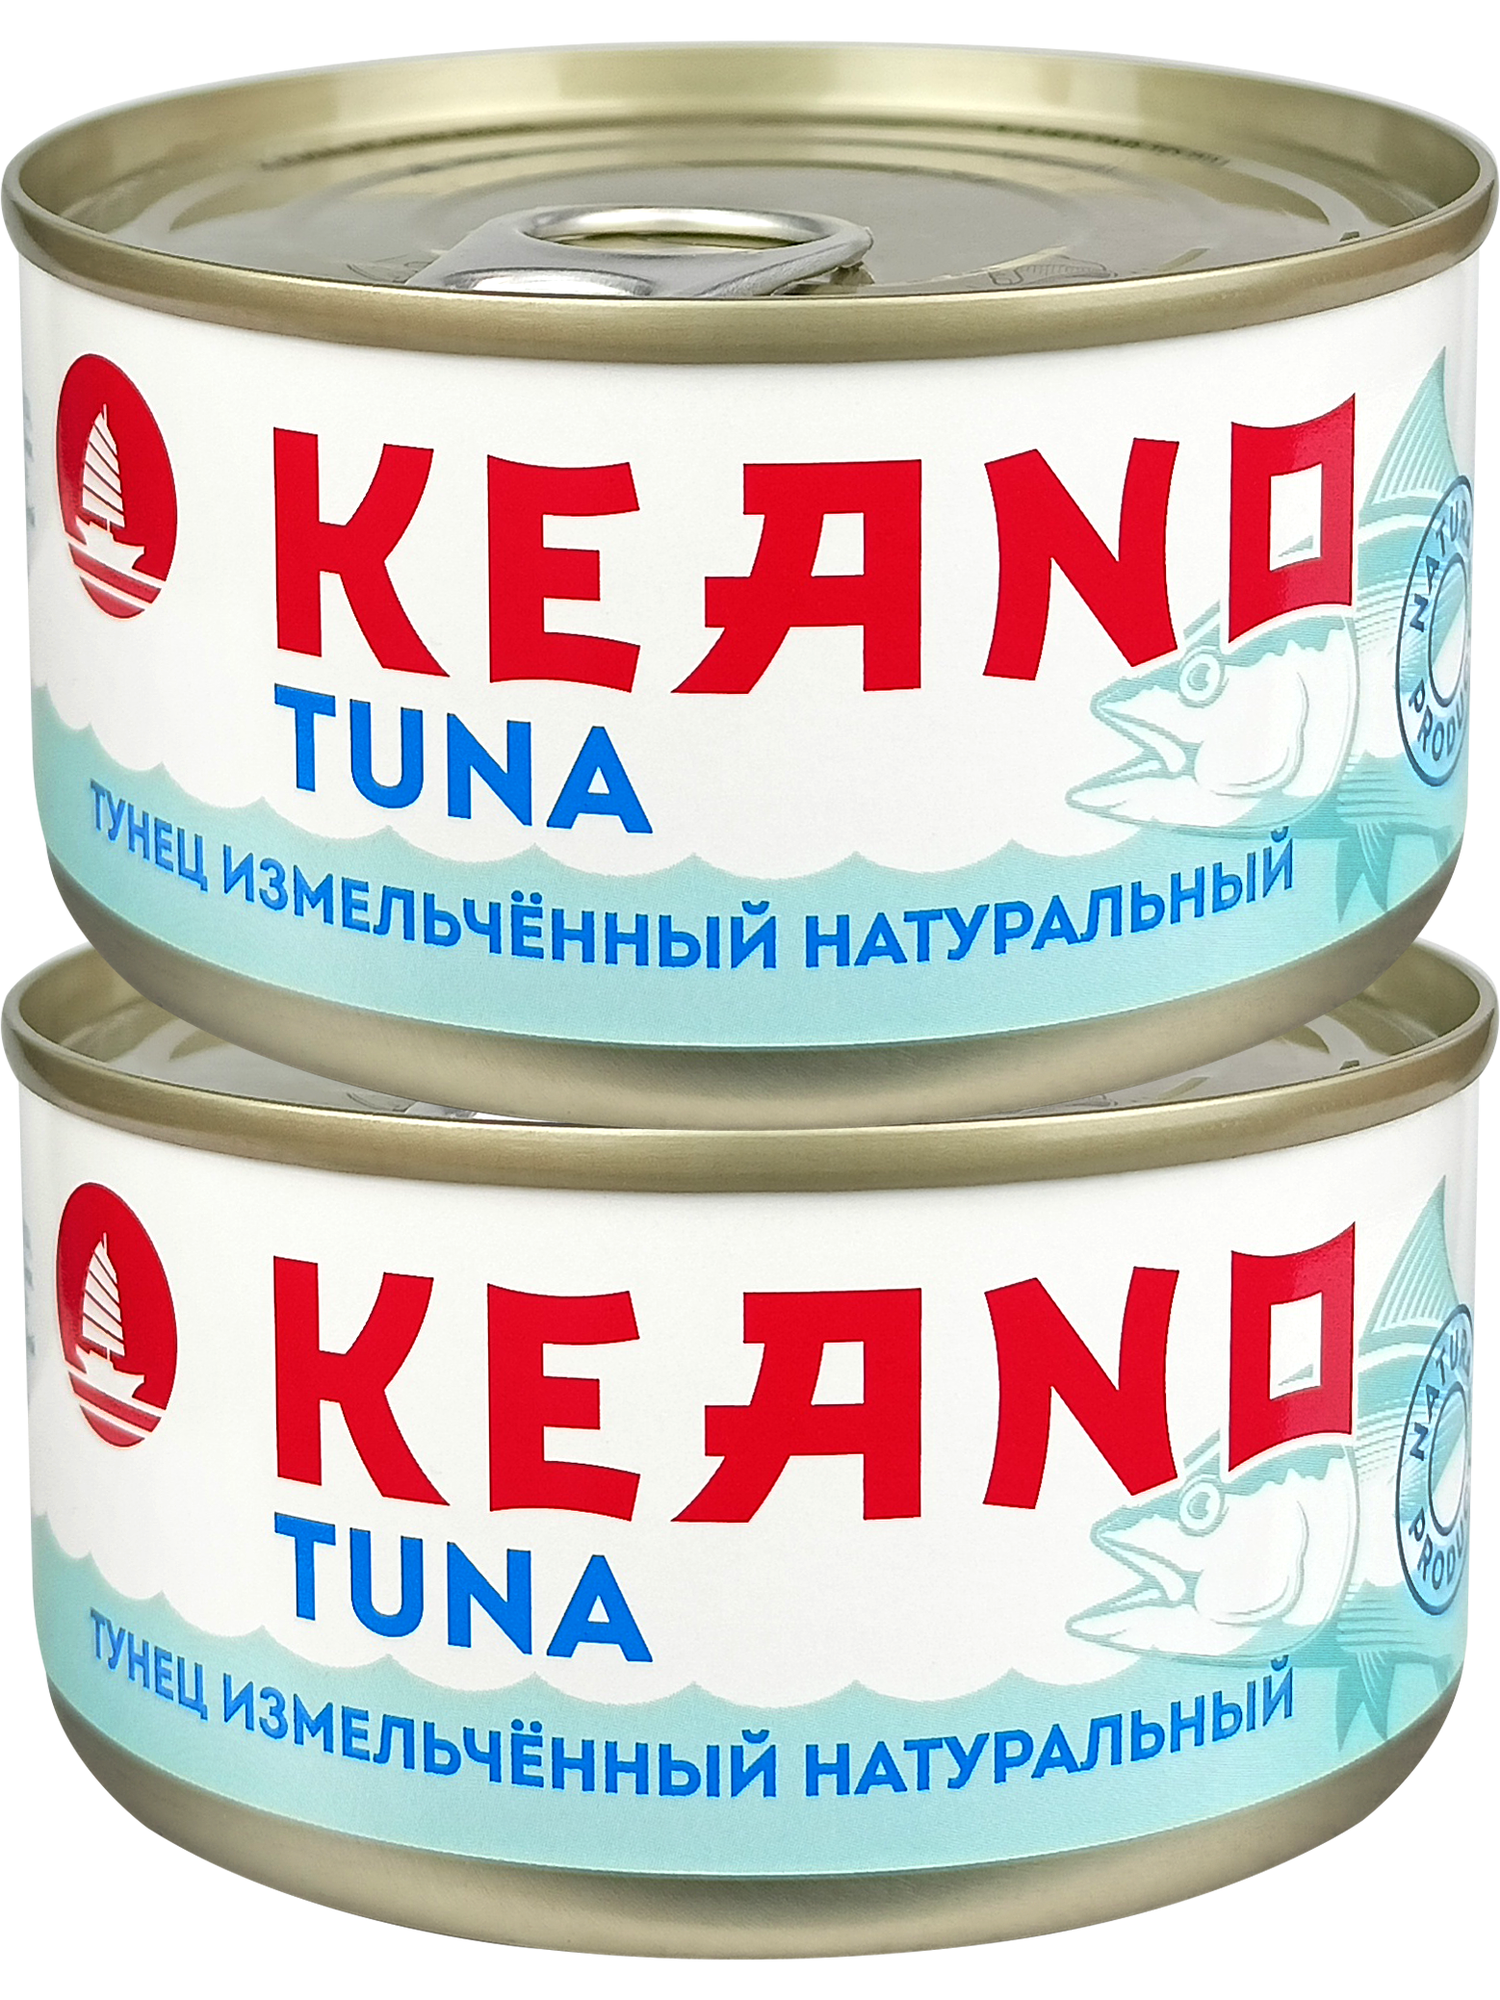 Консервы рыбные Keano - Тунец измельченный натуральный 185 г - 2 шт